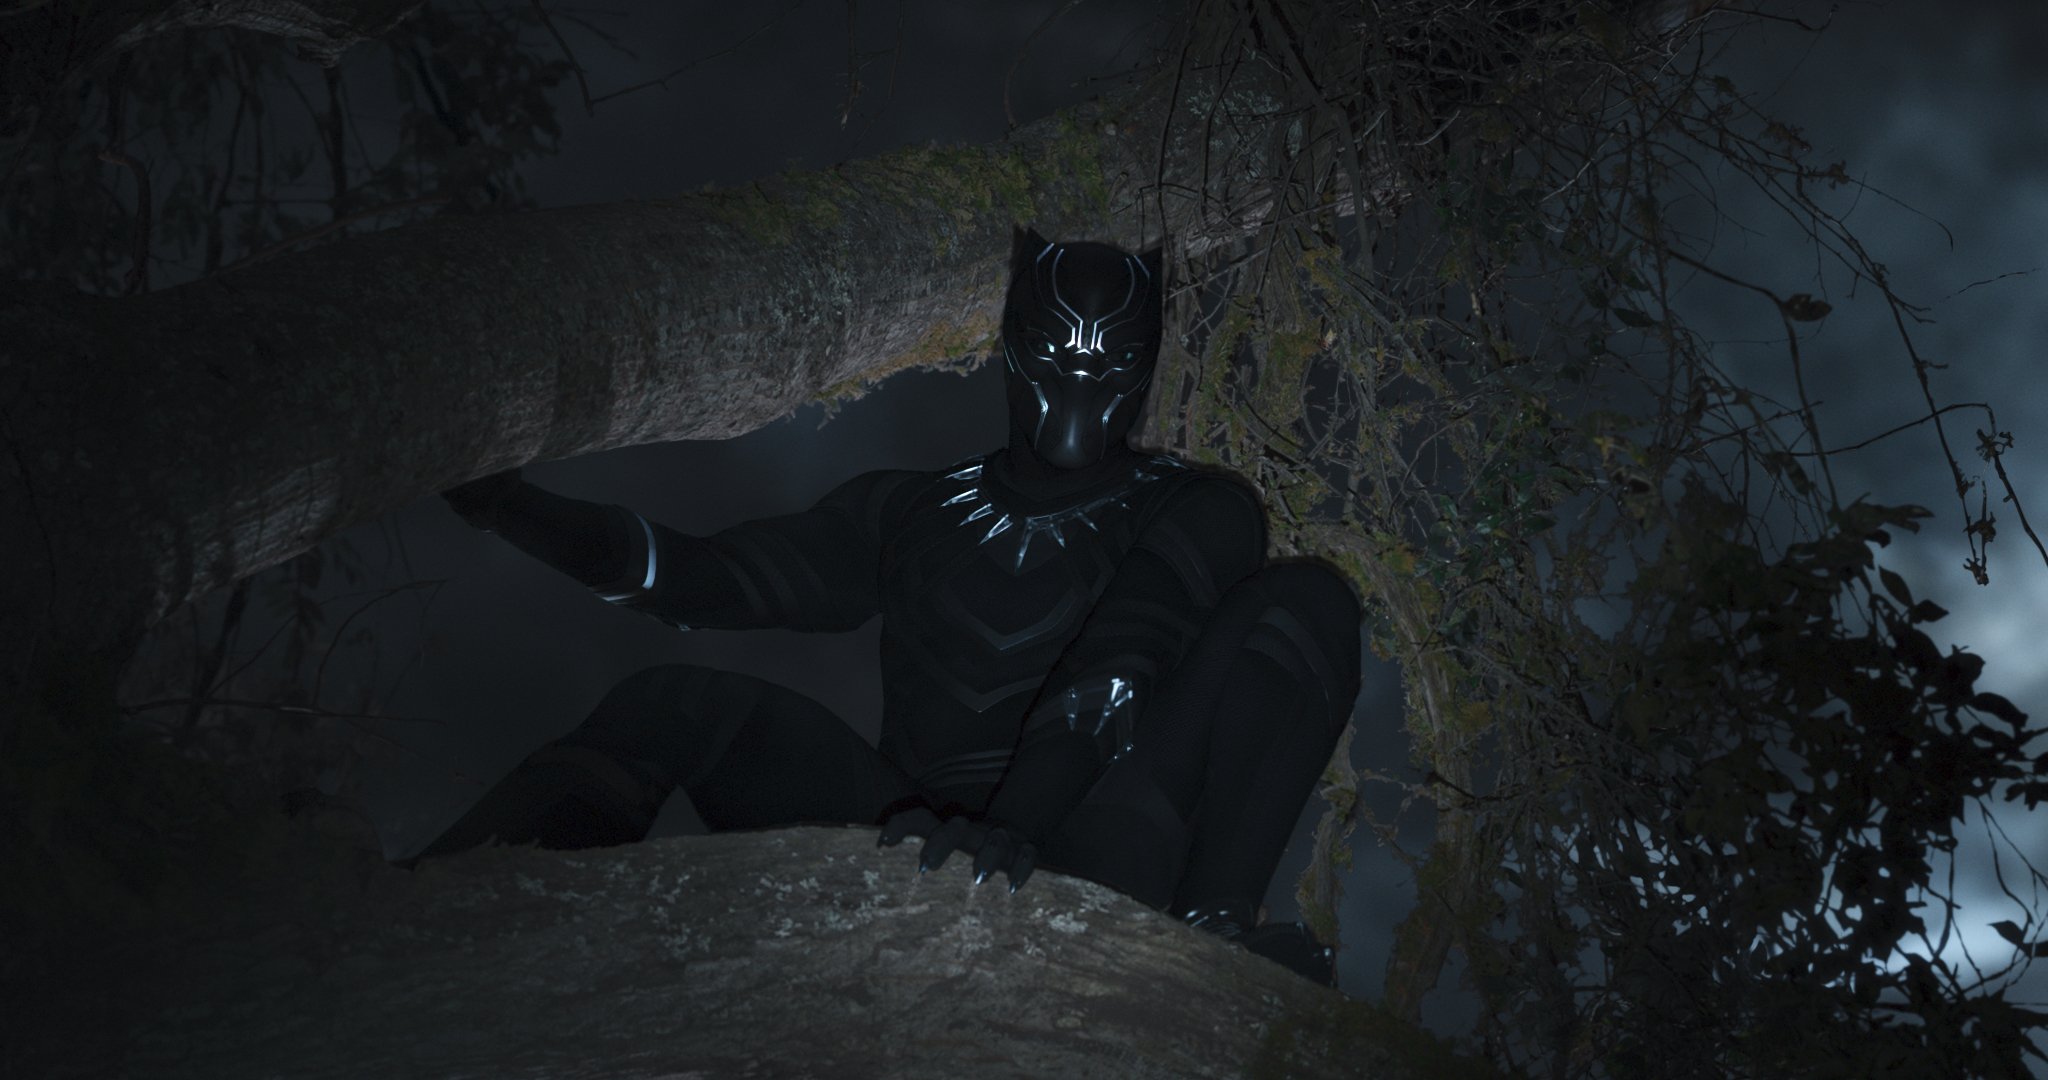 Photo du film Black Panther réalisé par Ryan Coogler avec Black Panther dans les arbres et éclairé à la lampe torche